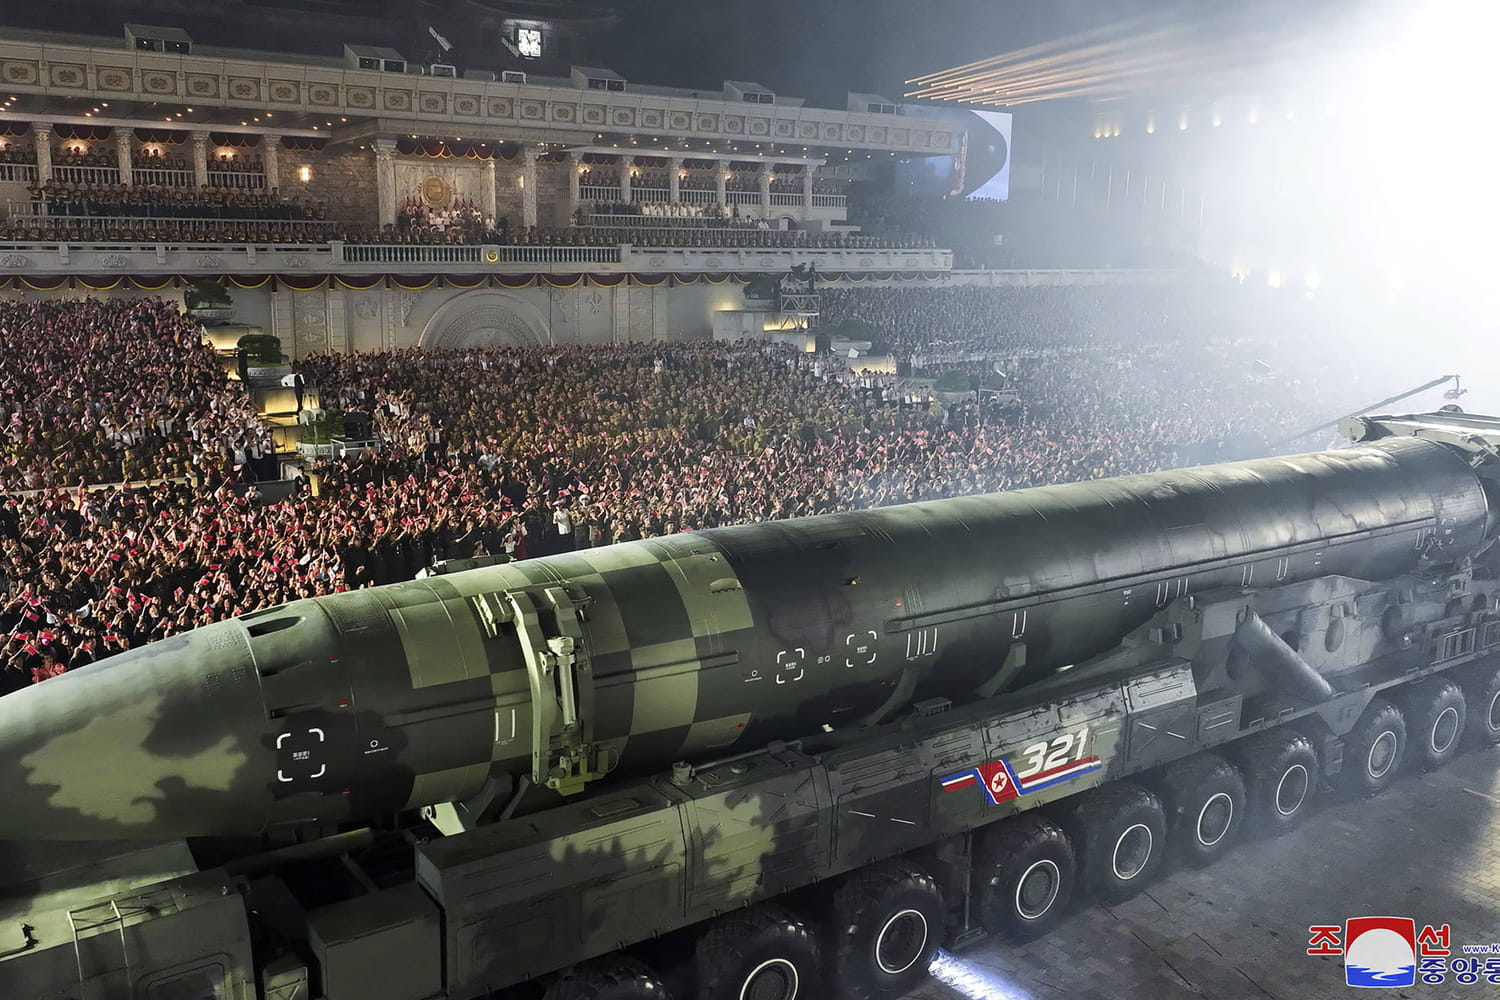 Quelles sont les armes que la Russie attend de la Corée du Nord ?